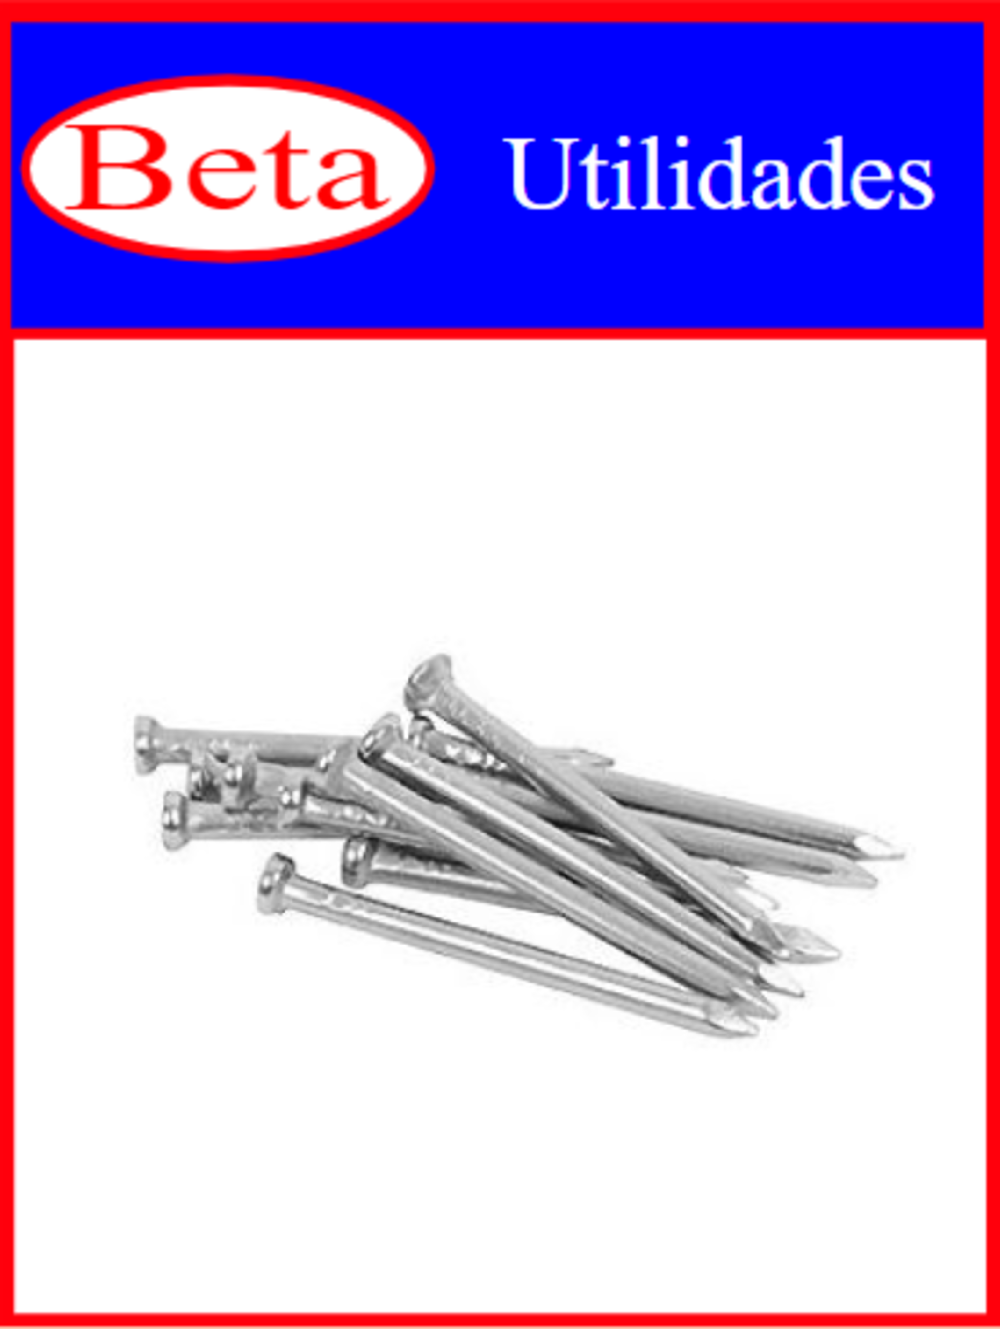 7898021401103 - BETA UTILIDADES PREGO 17X21 C/ 15UN